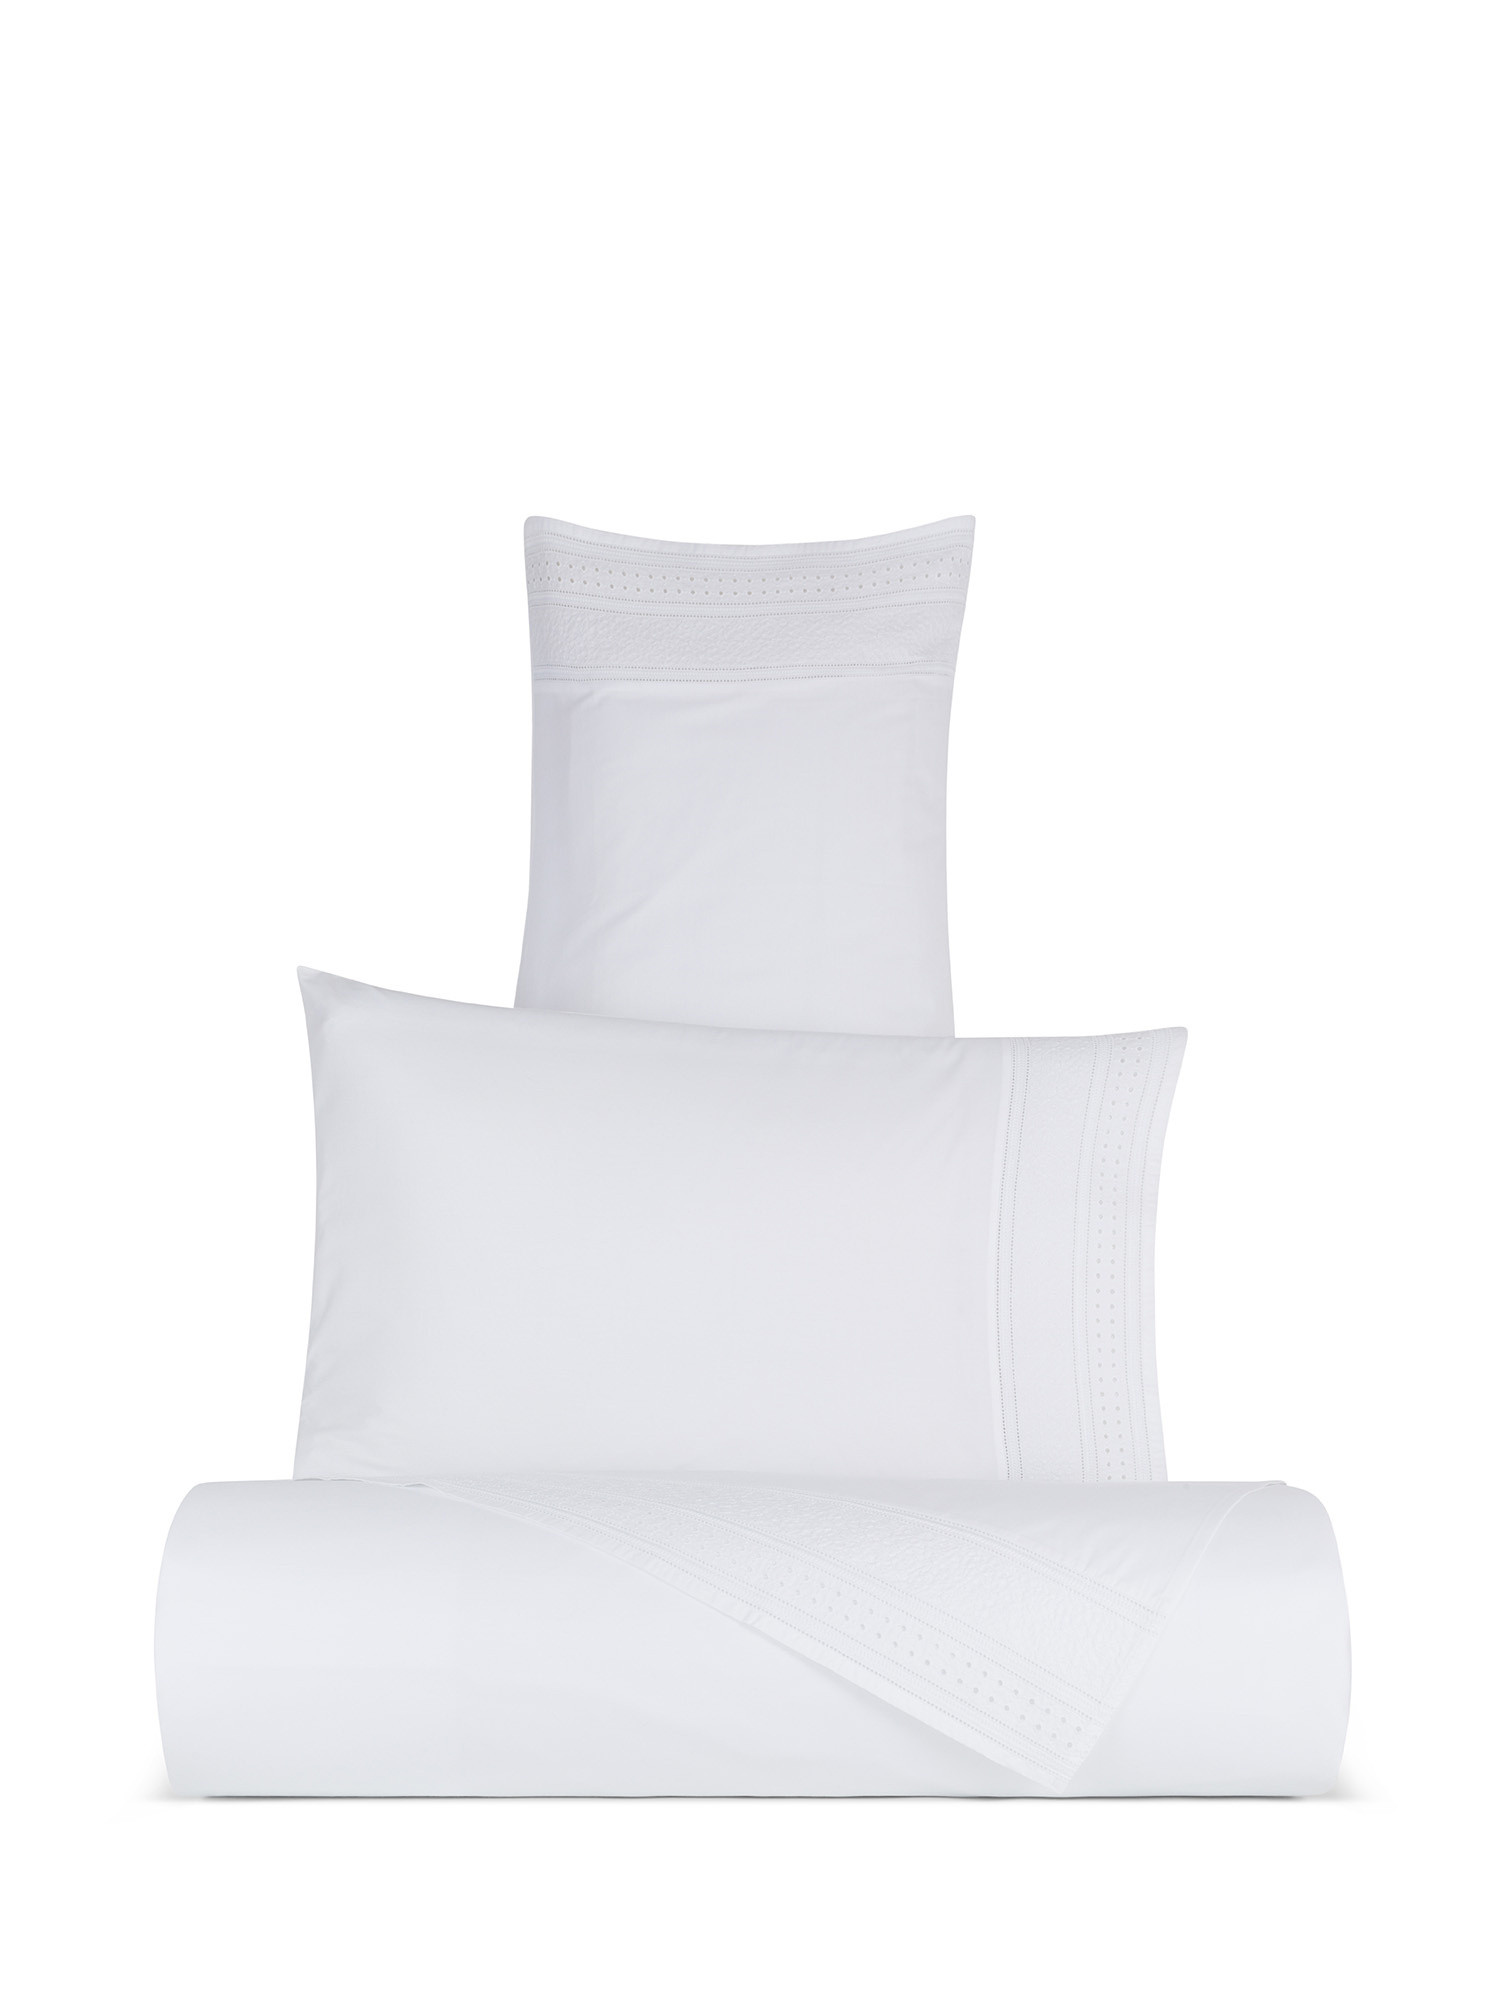 Pillowcase in fine cotton percale Portofino, White, large image number 3